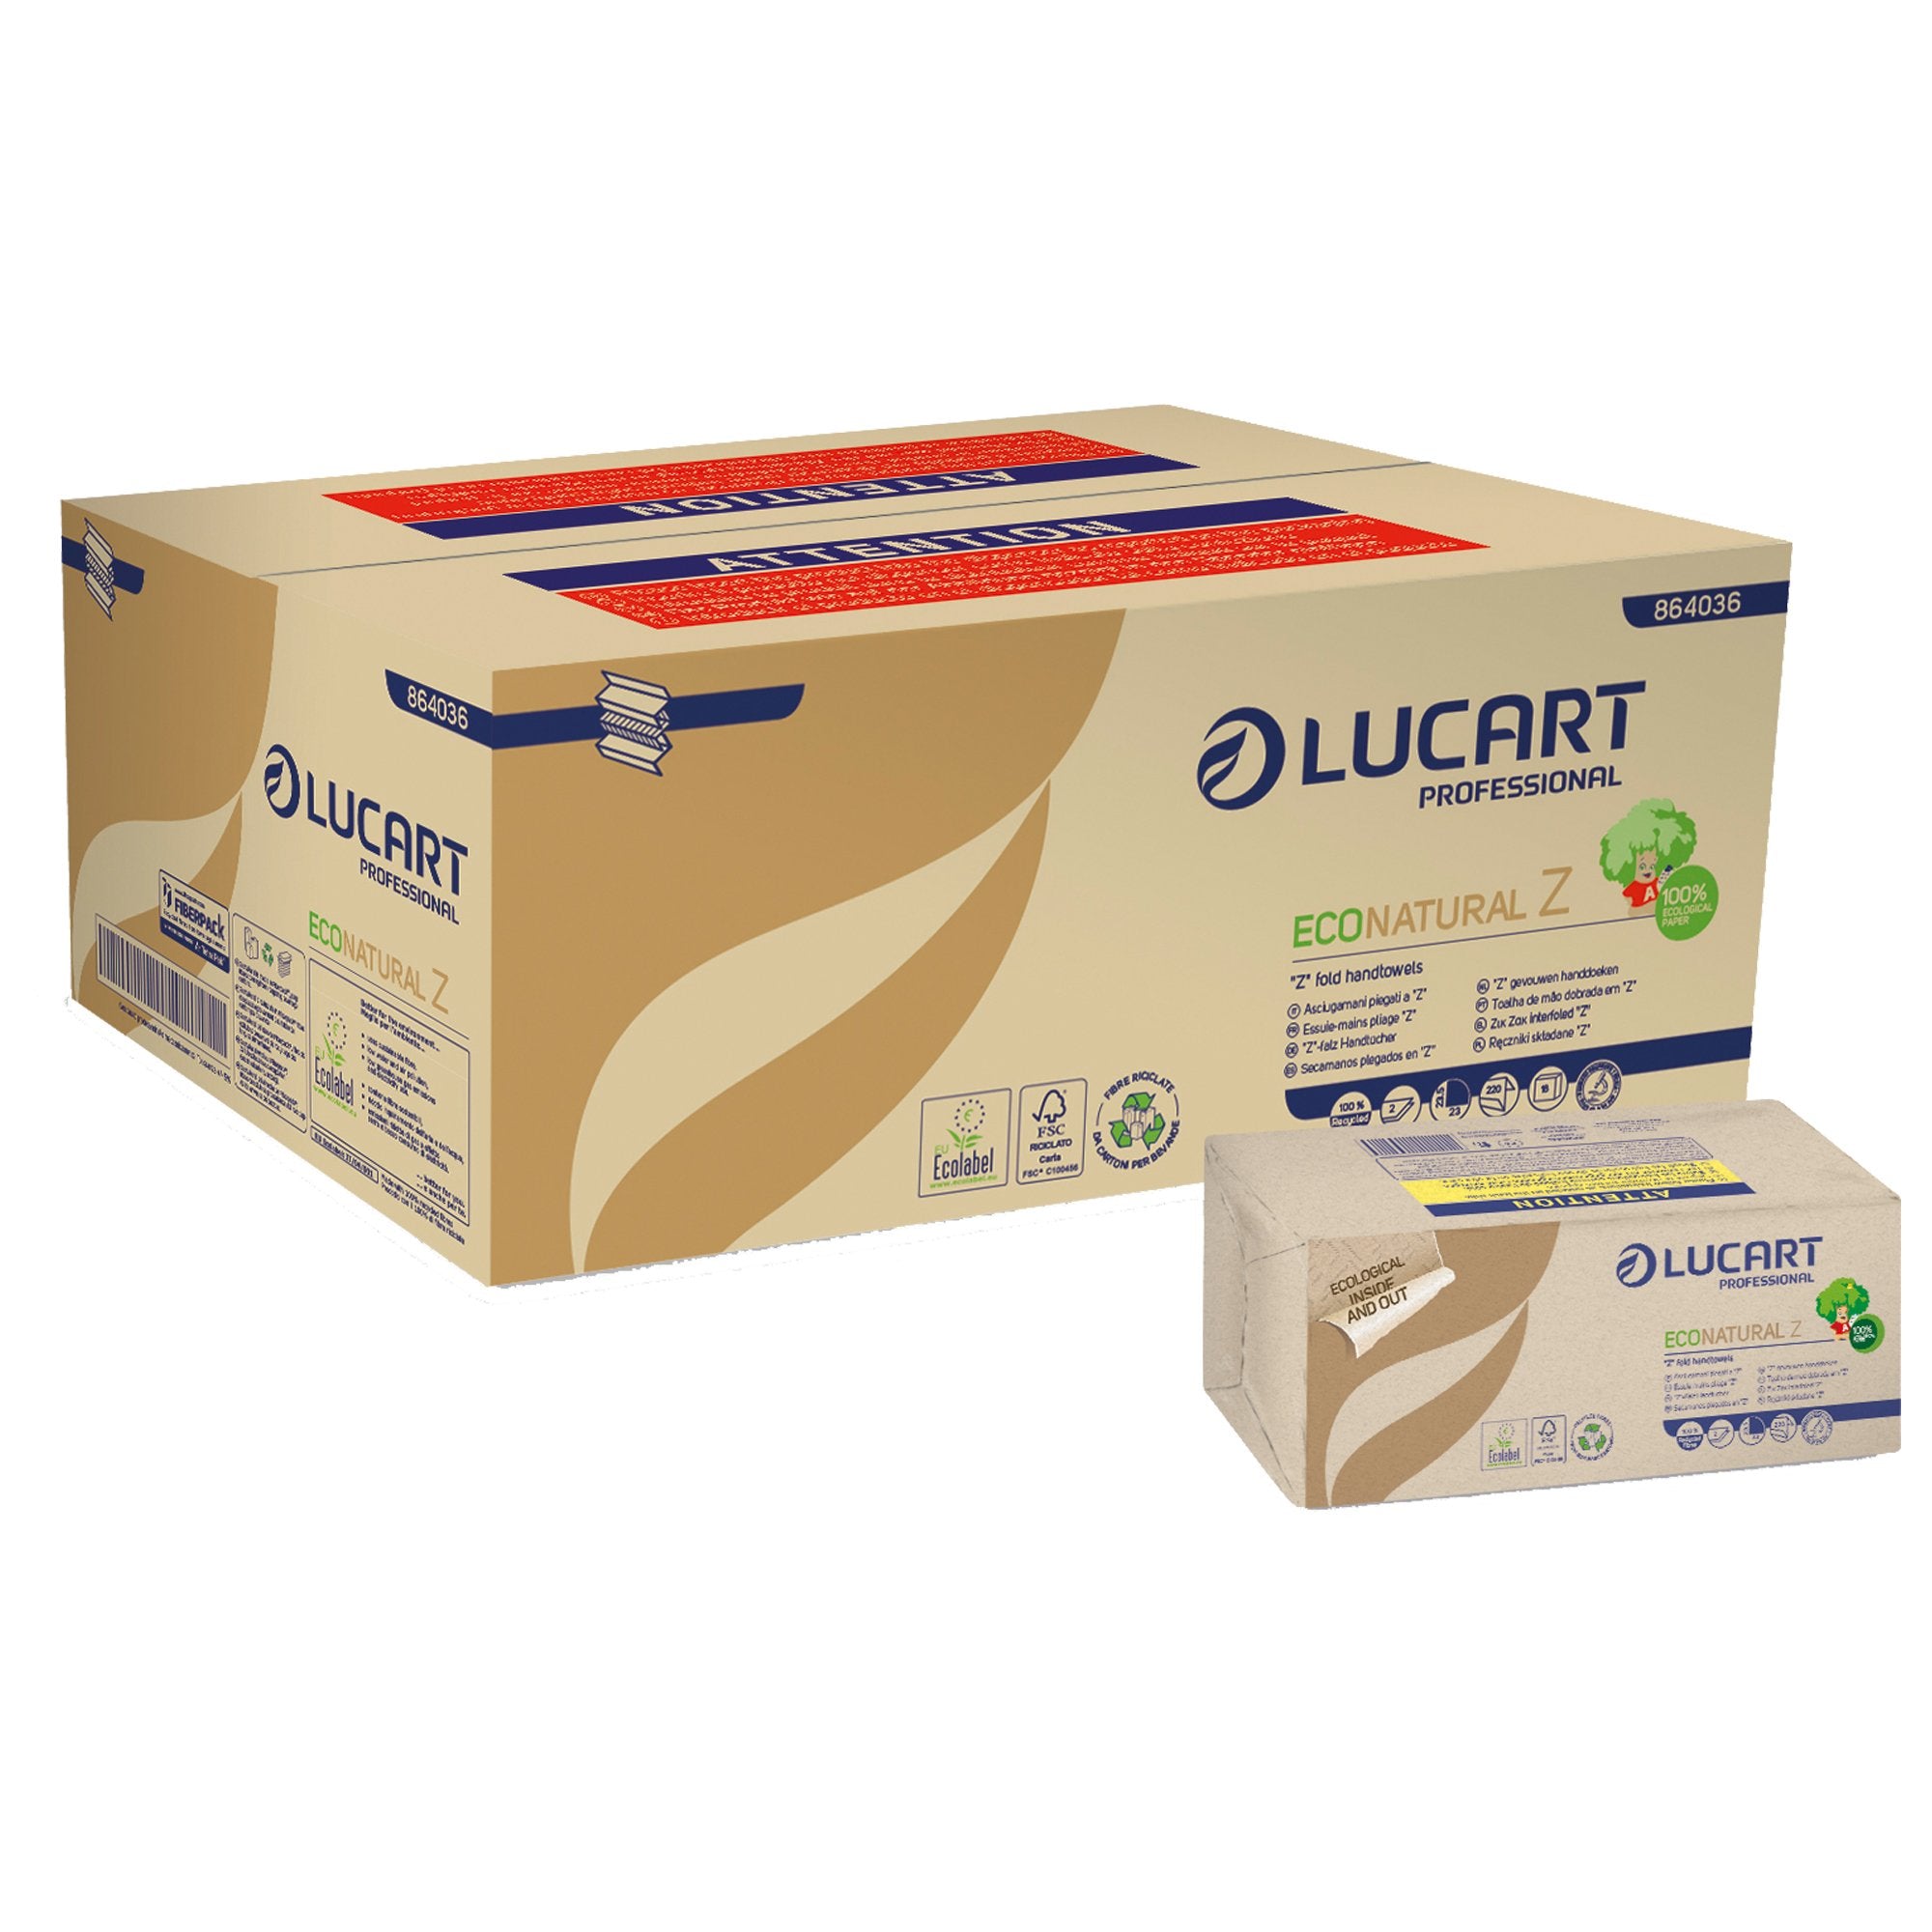 lucart-pacco-220-asciugamani-piegati-z-econatural